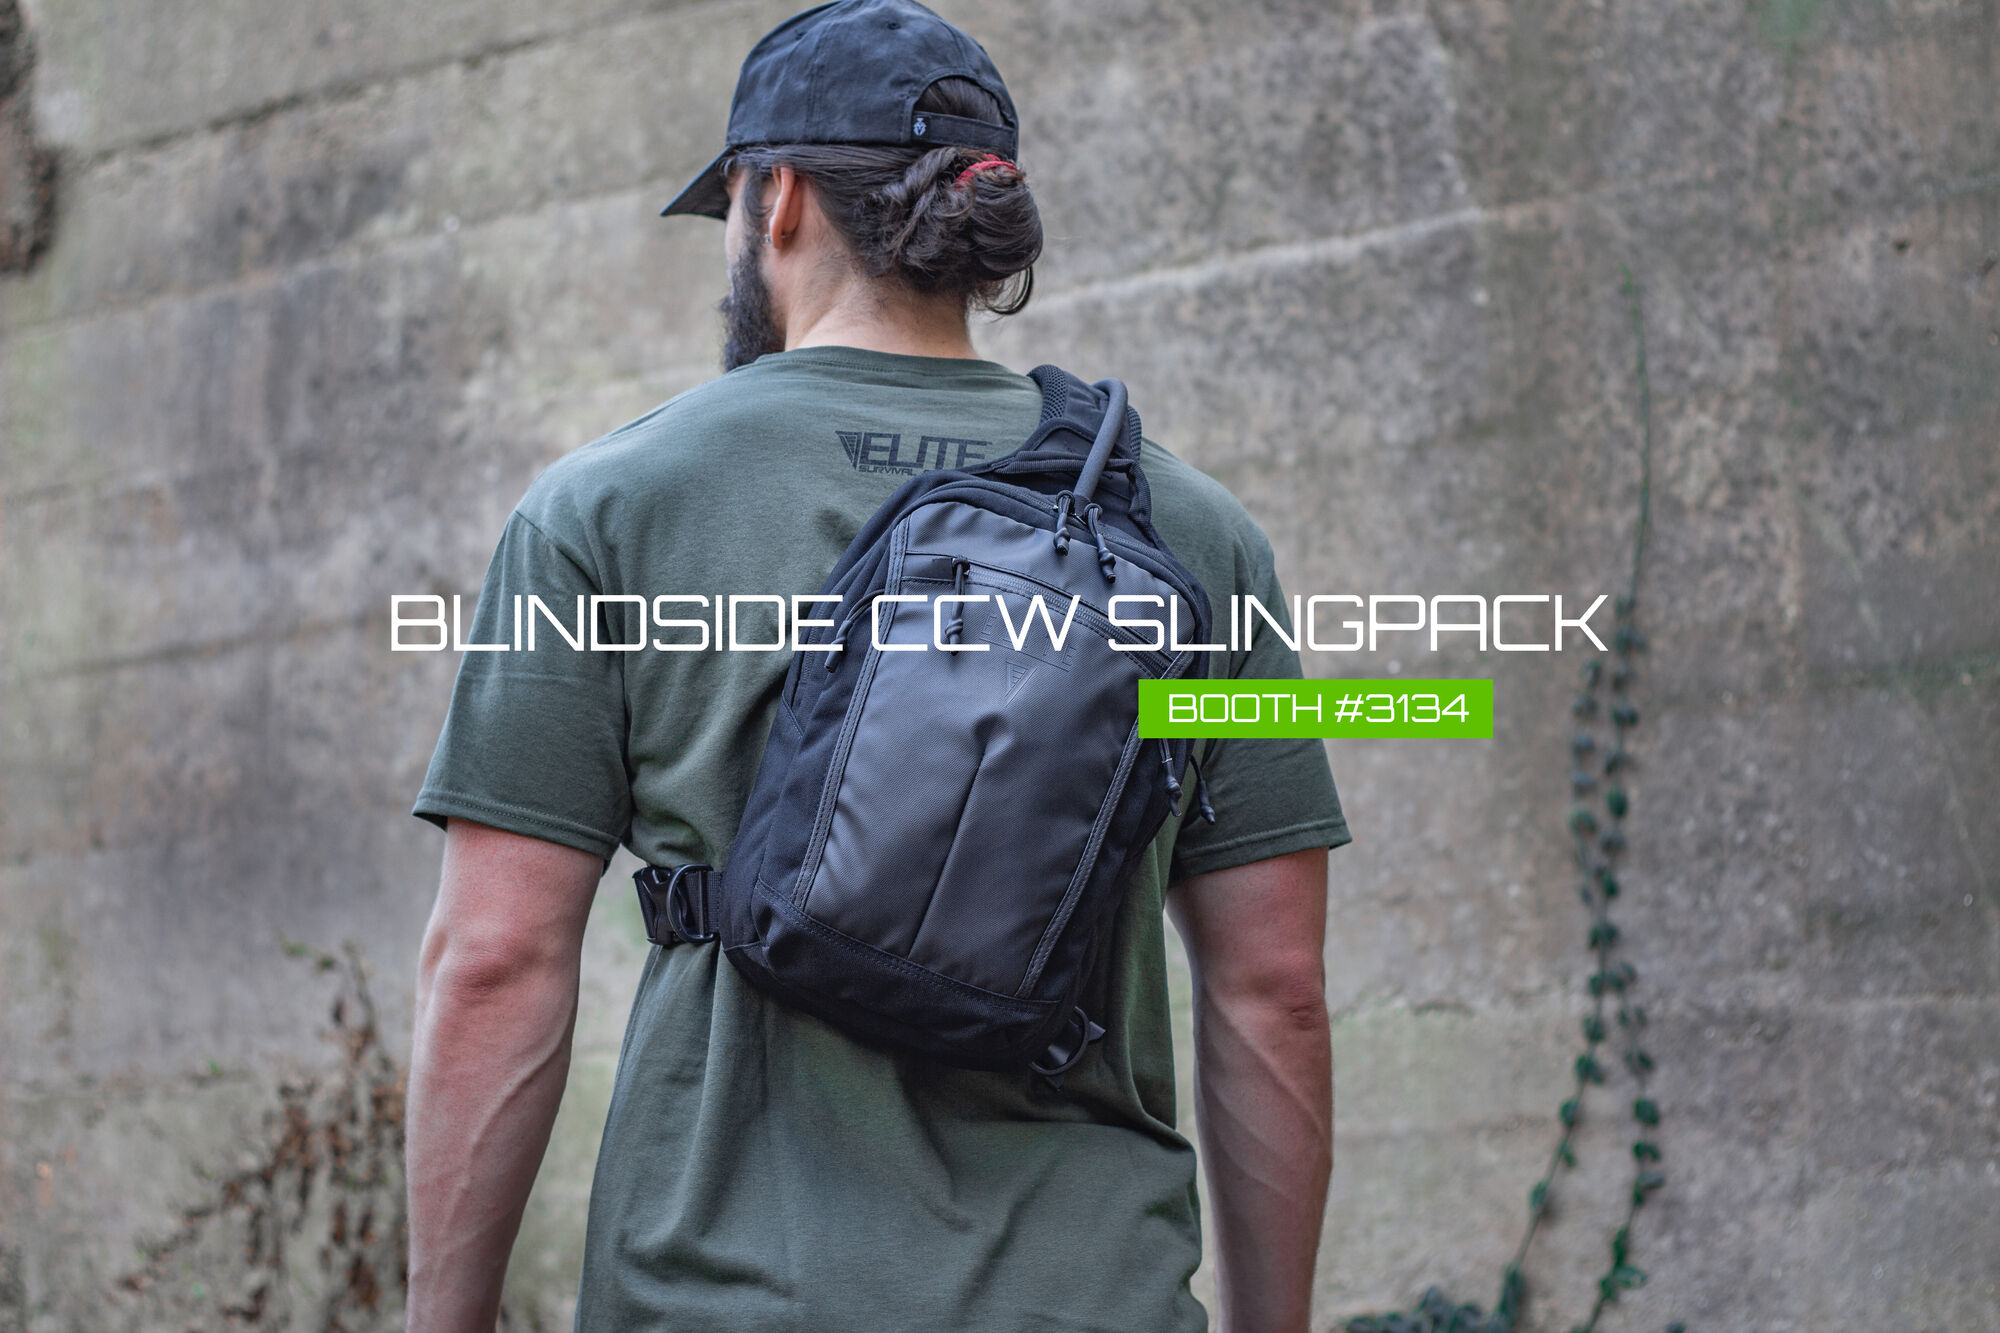 Elite Survival Blindside Concealed Carry Slingpack - Compact and Versatile Tactical Bag